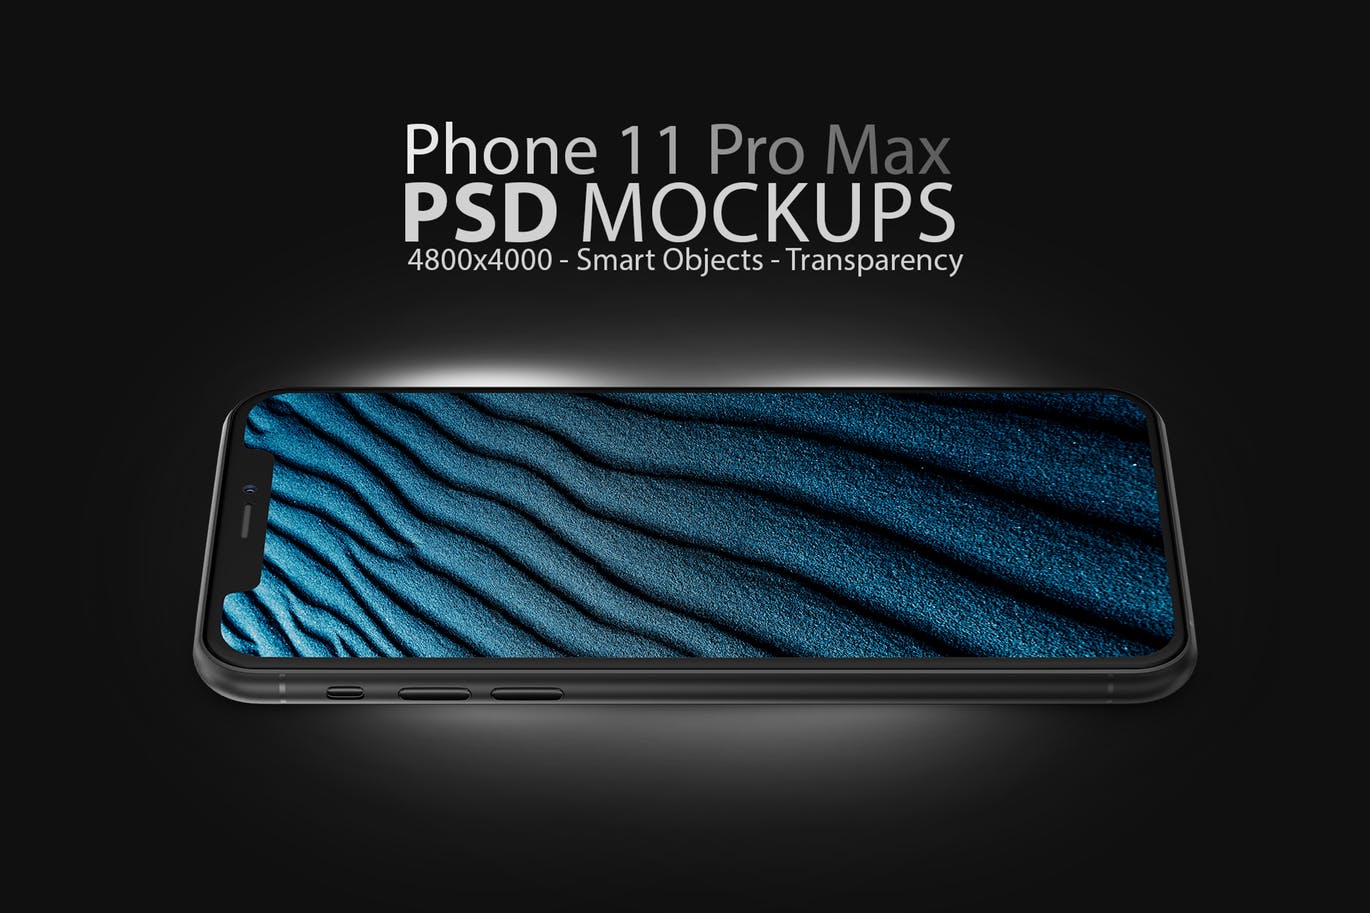 酷黑色iPhone 11 Pro Max屏幕预览16图库精选样机模板 Phone 11 Black PSD Mockups插图